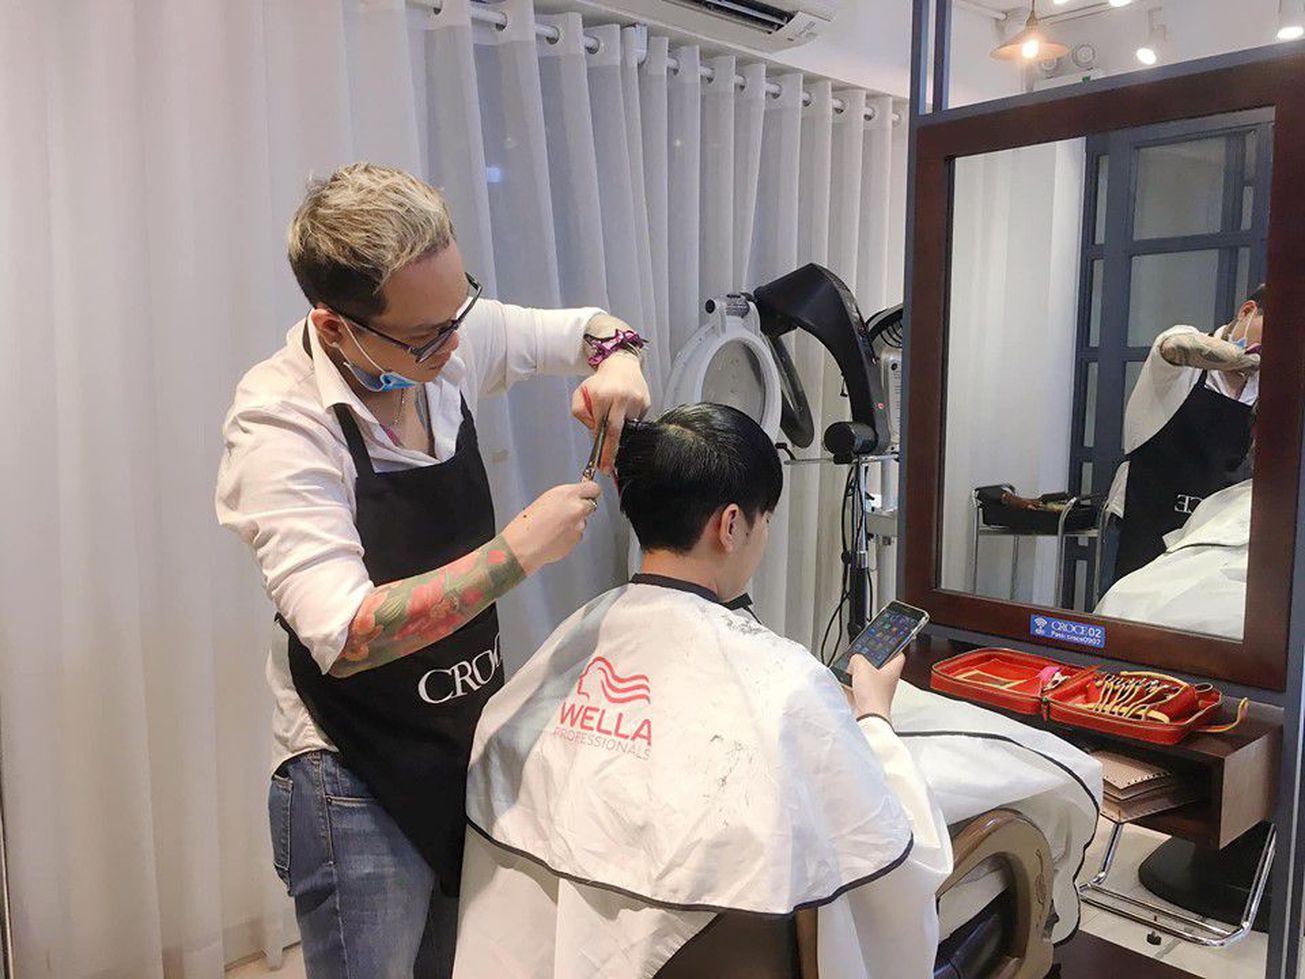 Croce Korean Hair Salon 1 gallaries